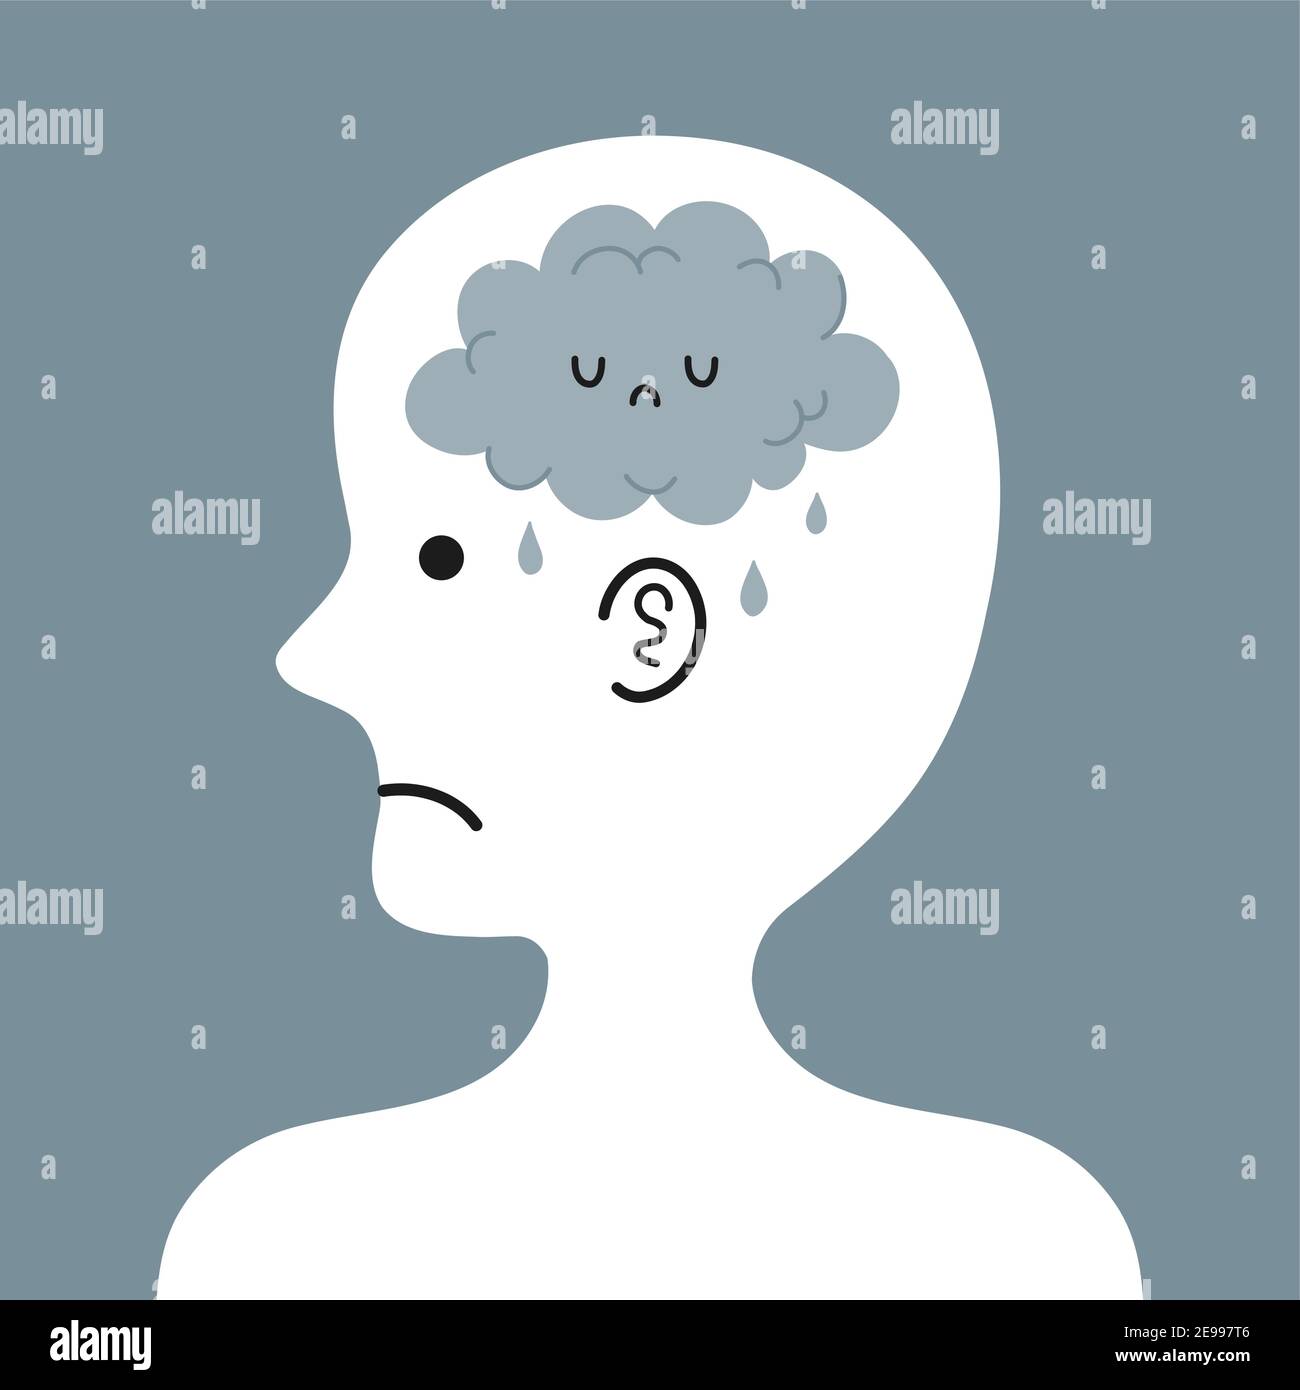 Cute triste testa umana in profilo con nuvola di pioggia all'interno. Cattiva condizione mentale, emotiva. Icona di illustrazione del carattere cartoon vettoriale. Concetto di depressione Illustrazione Vettoriale